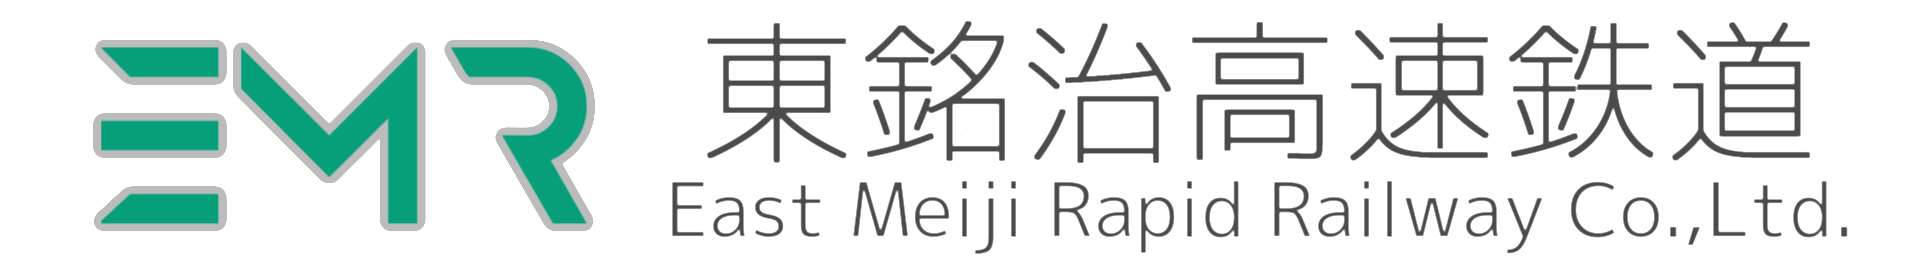 EMR_Logo.png